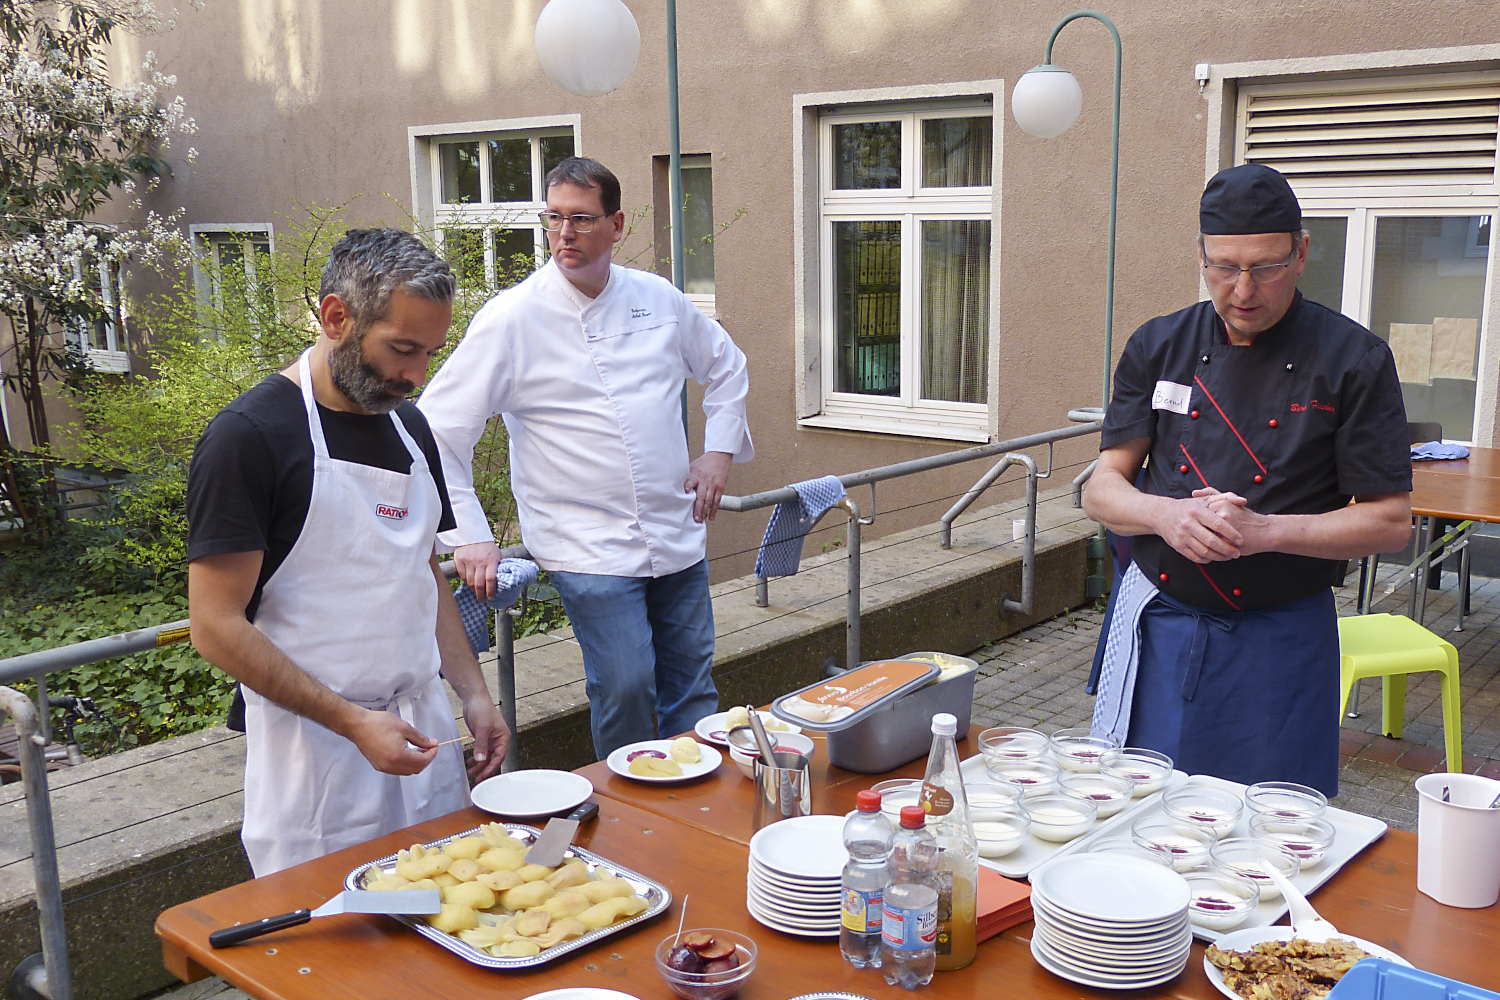 Bernd Fischer von der Stadtmission betrachtet mit seinem Assistenten und einem Teilnehmer das Ergebnis des gemeinsamen Kochens